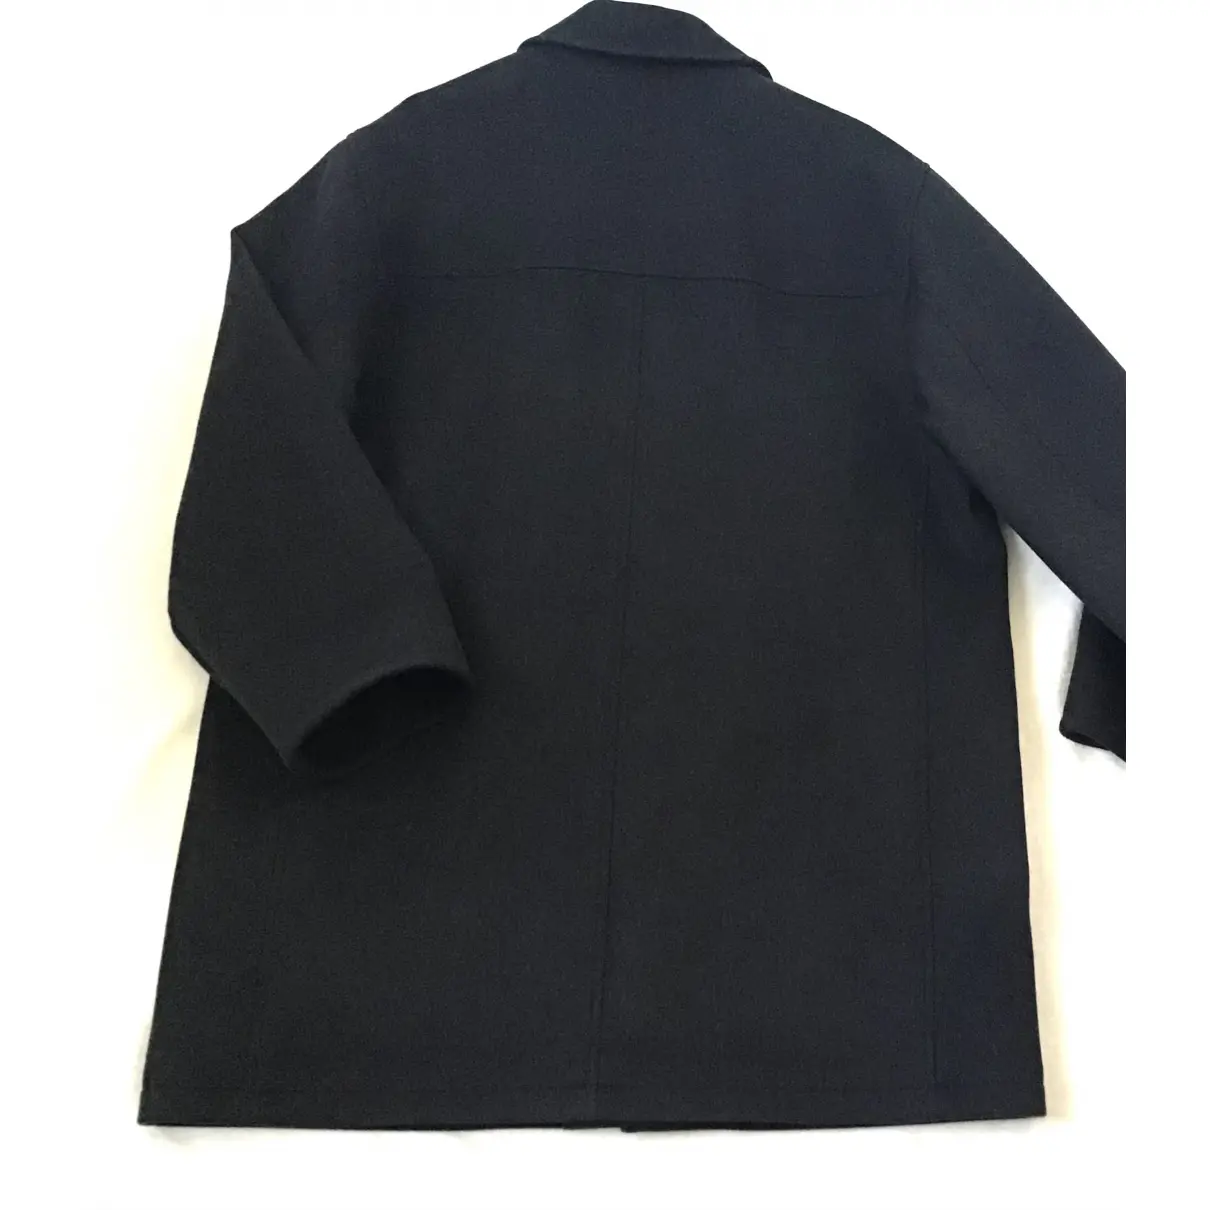 Buy Yves Saint Laurent Wool peacoat online